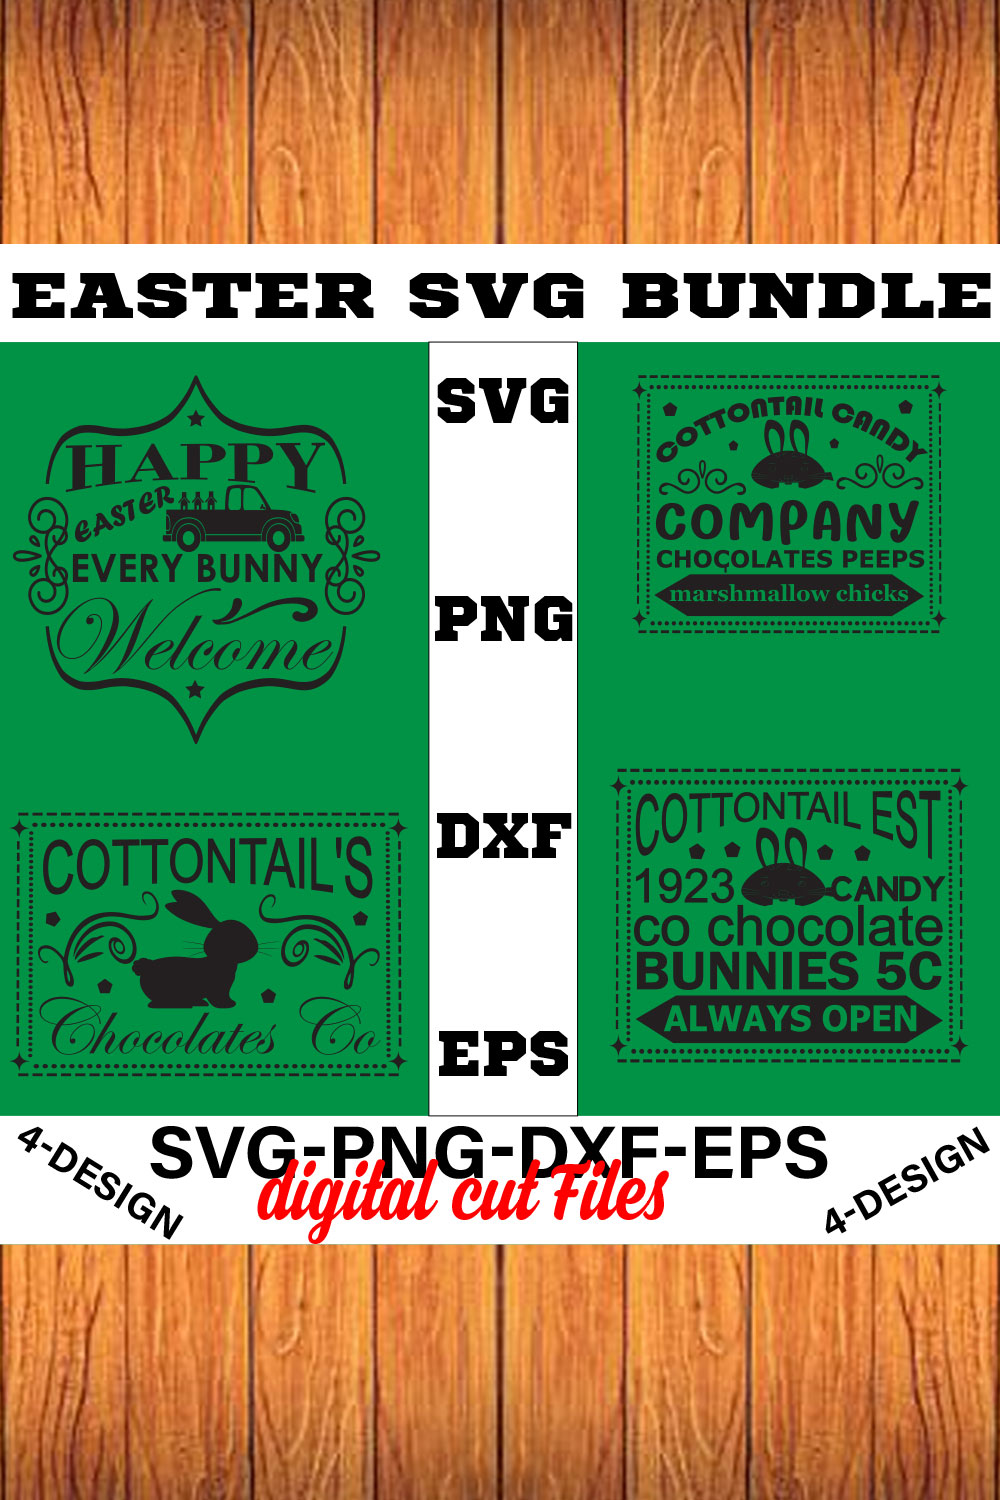 Happy Easter SVG Bundle, Easter SVG, Easter quotes, Easter Bunny svg, Easter Egg svg, Volume-10 pinterest preview image.